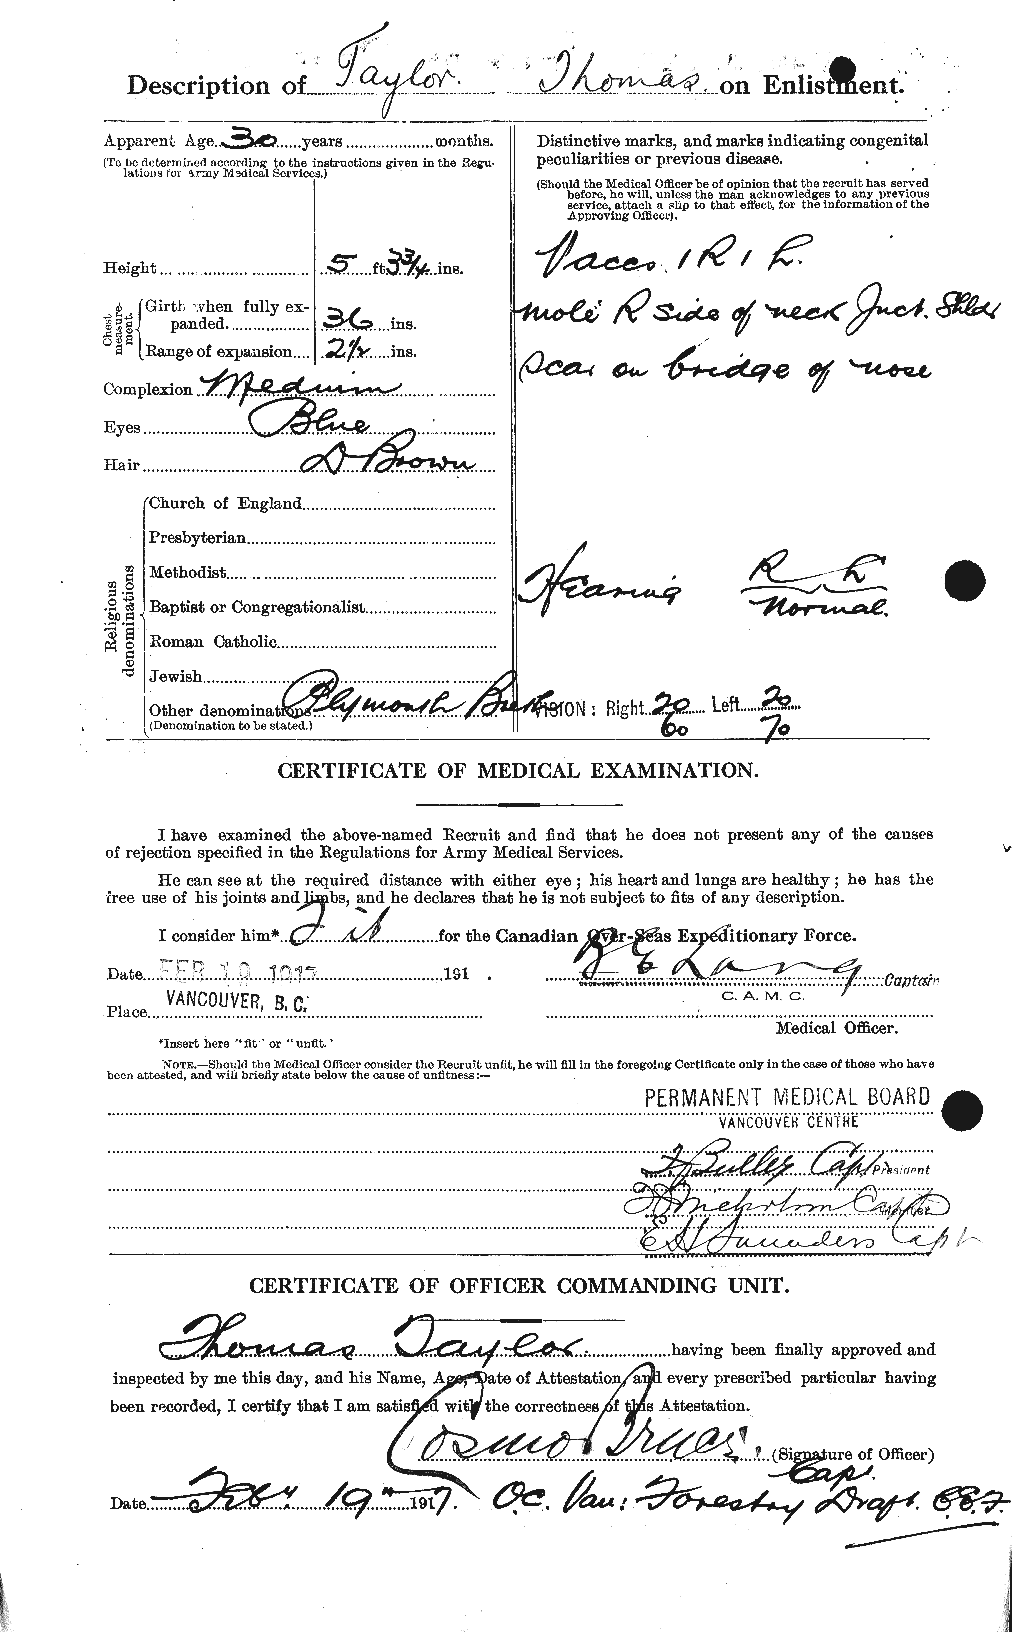 Dossiers du Personnel de la Première Guerre mondiale - CEC 627955b